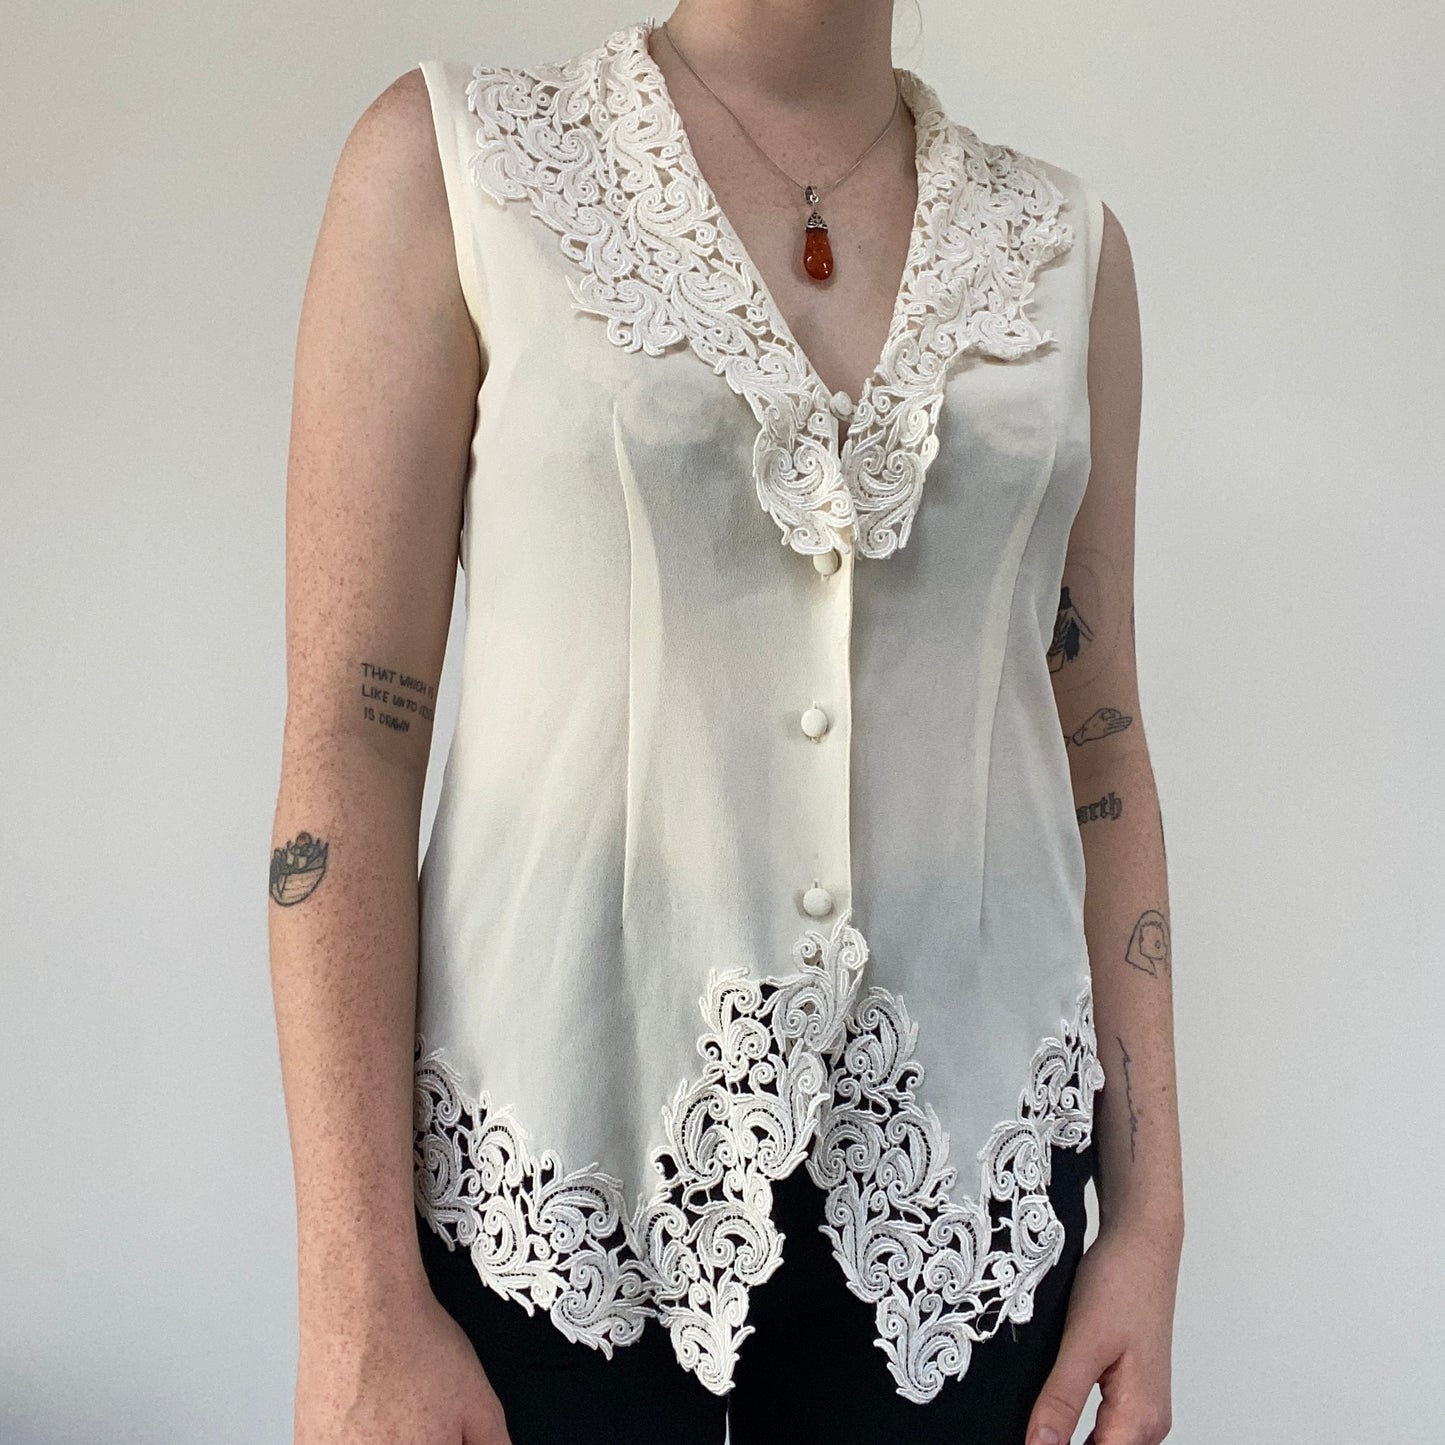 Vintage blouse - size 8